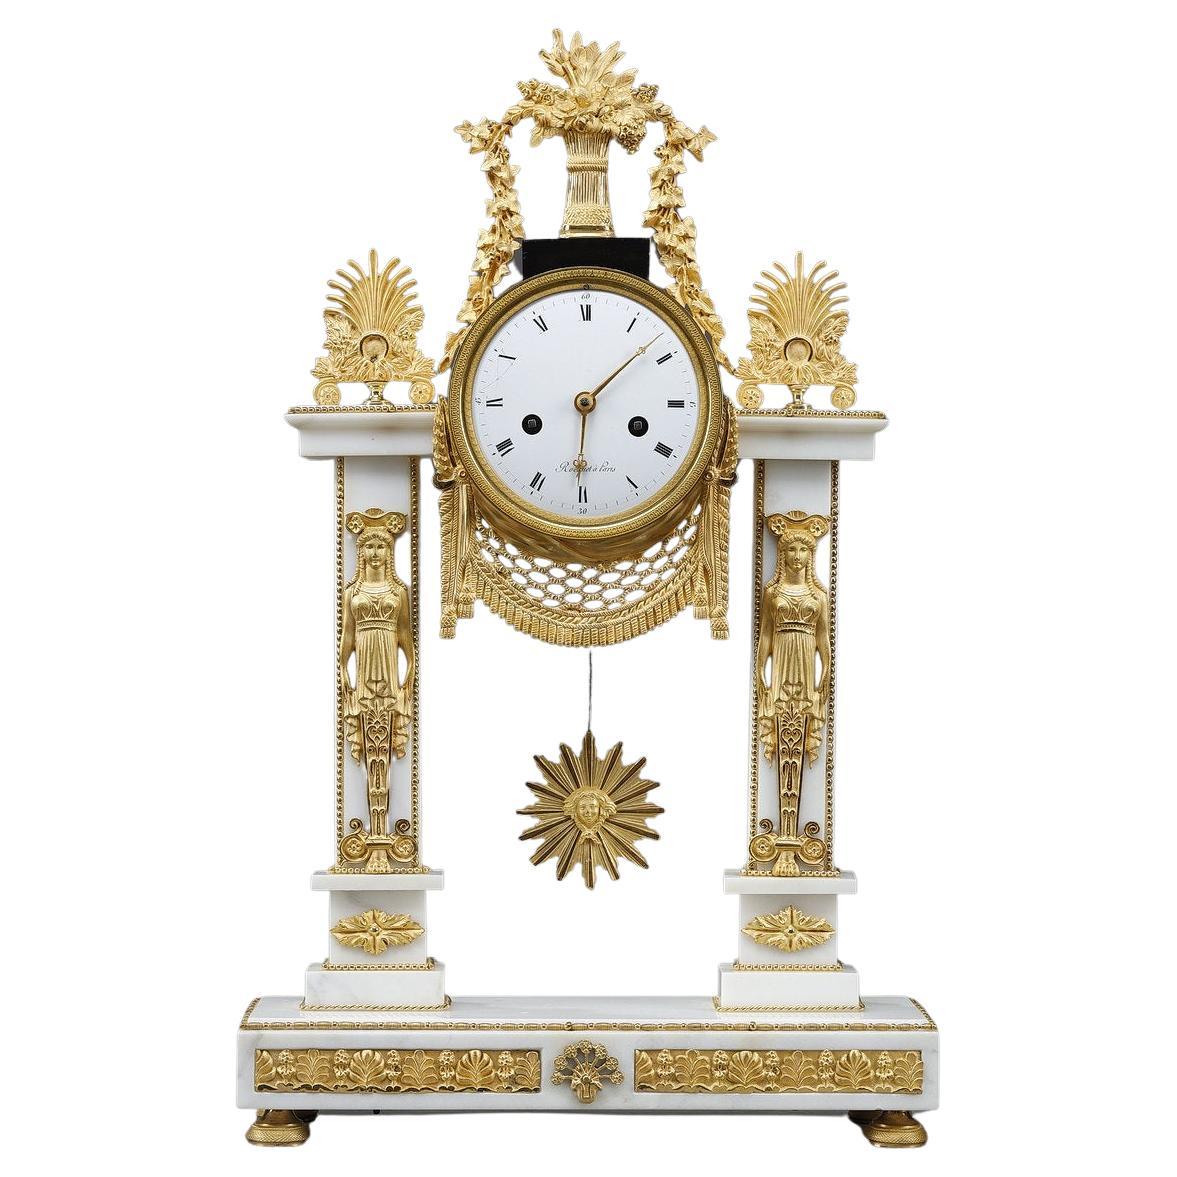 Rare horloge Portico d'époque Louis XVI par Jacques-Claude-martin Rocquet